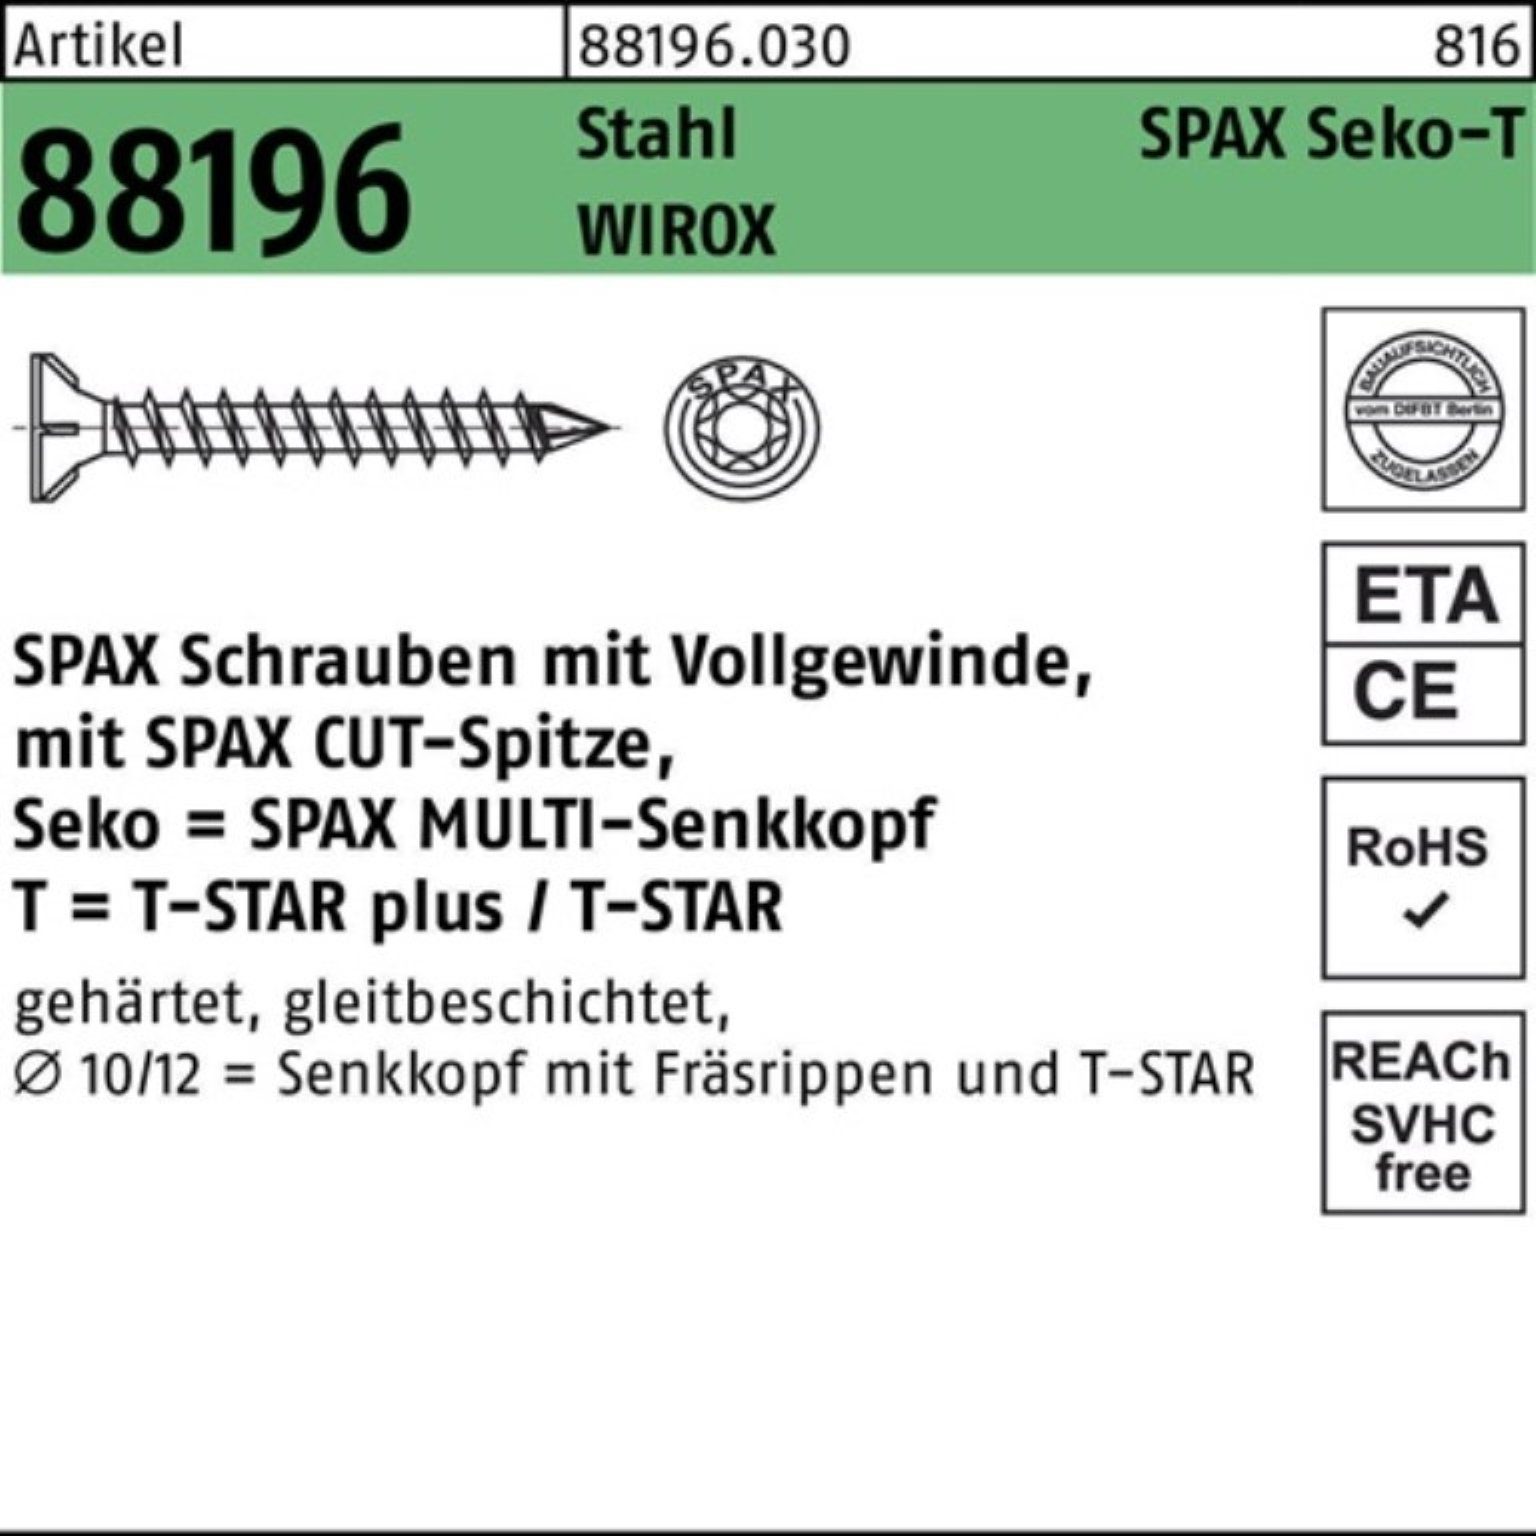 galv. Pack Sta SPAX Spitze/T-STAR VG Schraube Seko 88196 100er Schraube R 12x300-T50